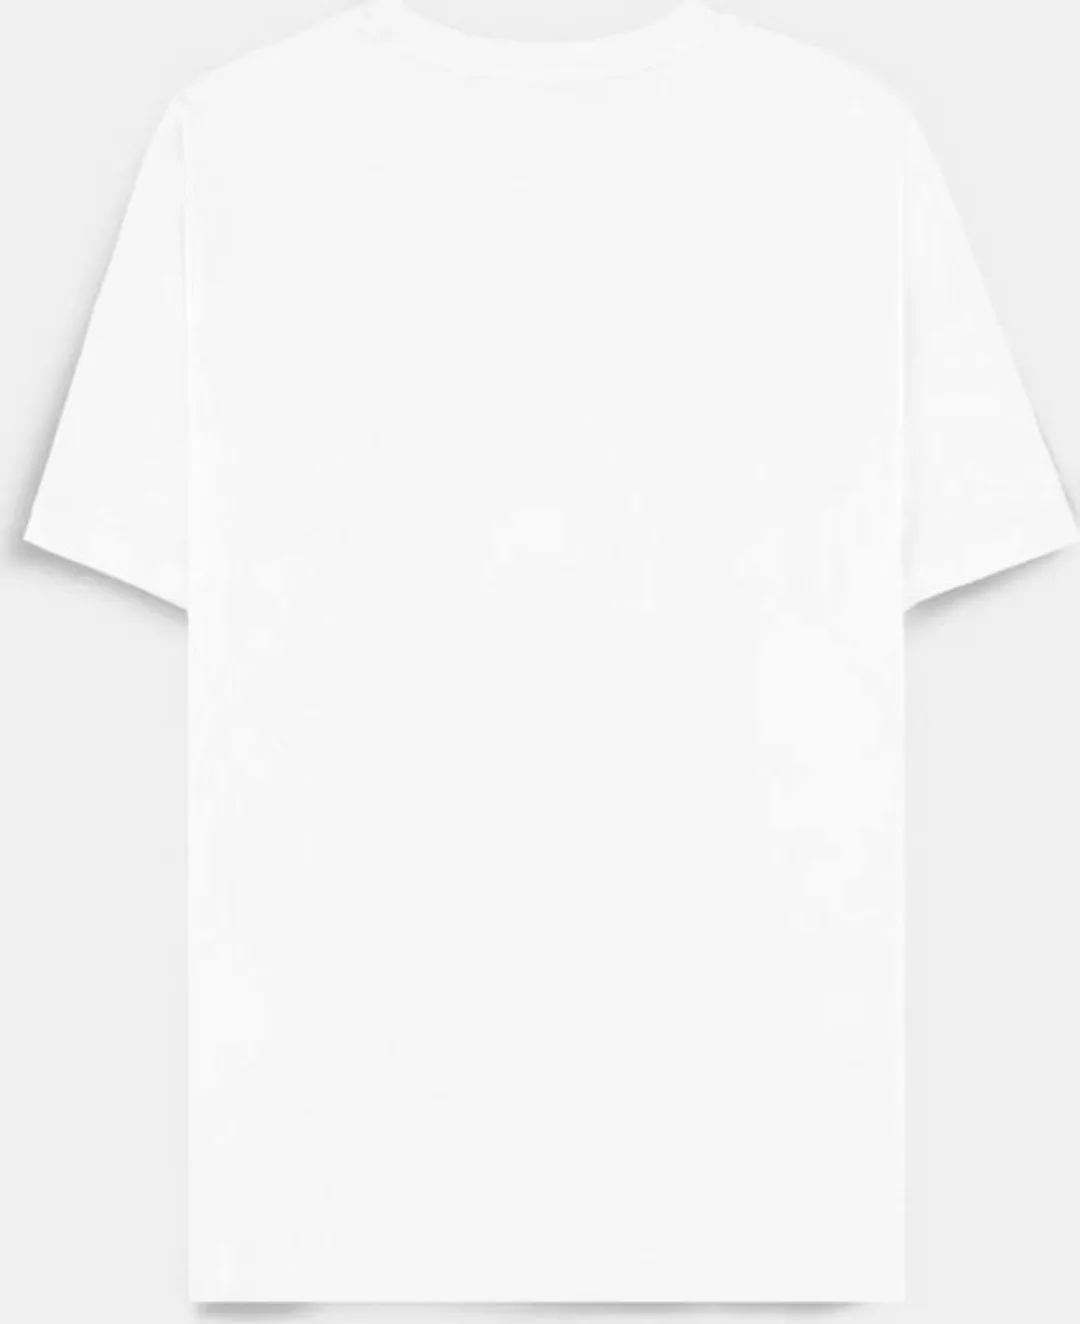 MARVEL T-Shirt günstig online kaufen